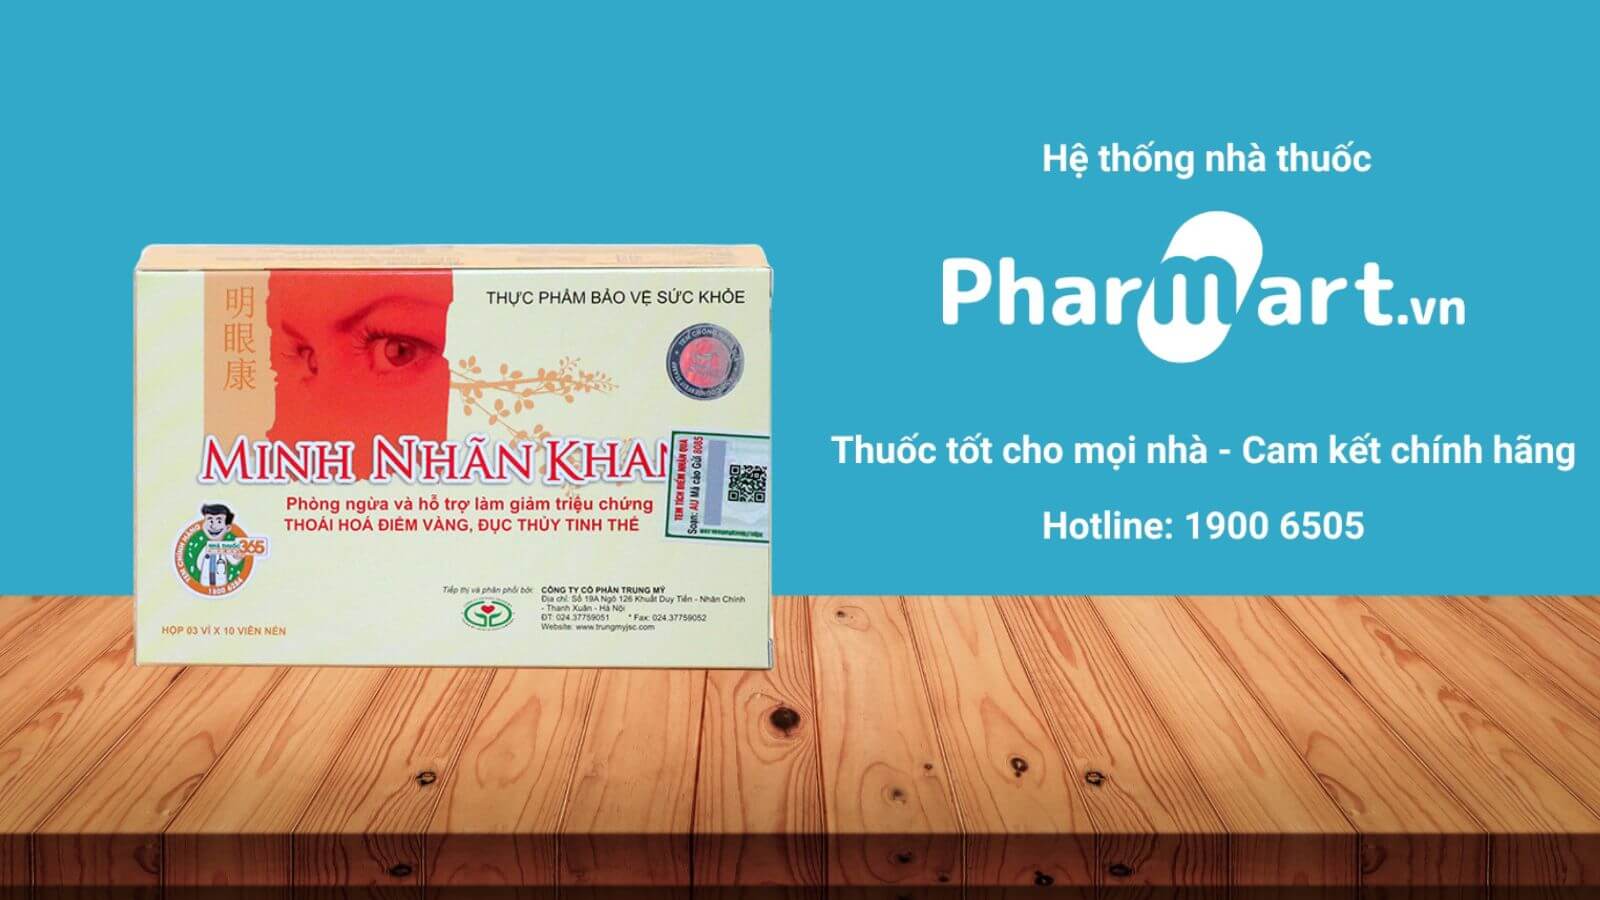 Mua Minh Nhãn Khang chính hãng tại Pharmart.vn